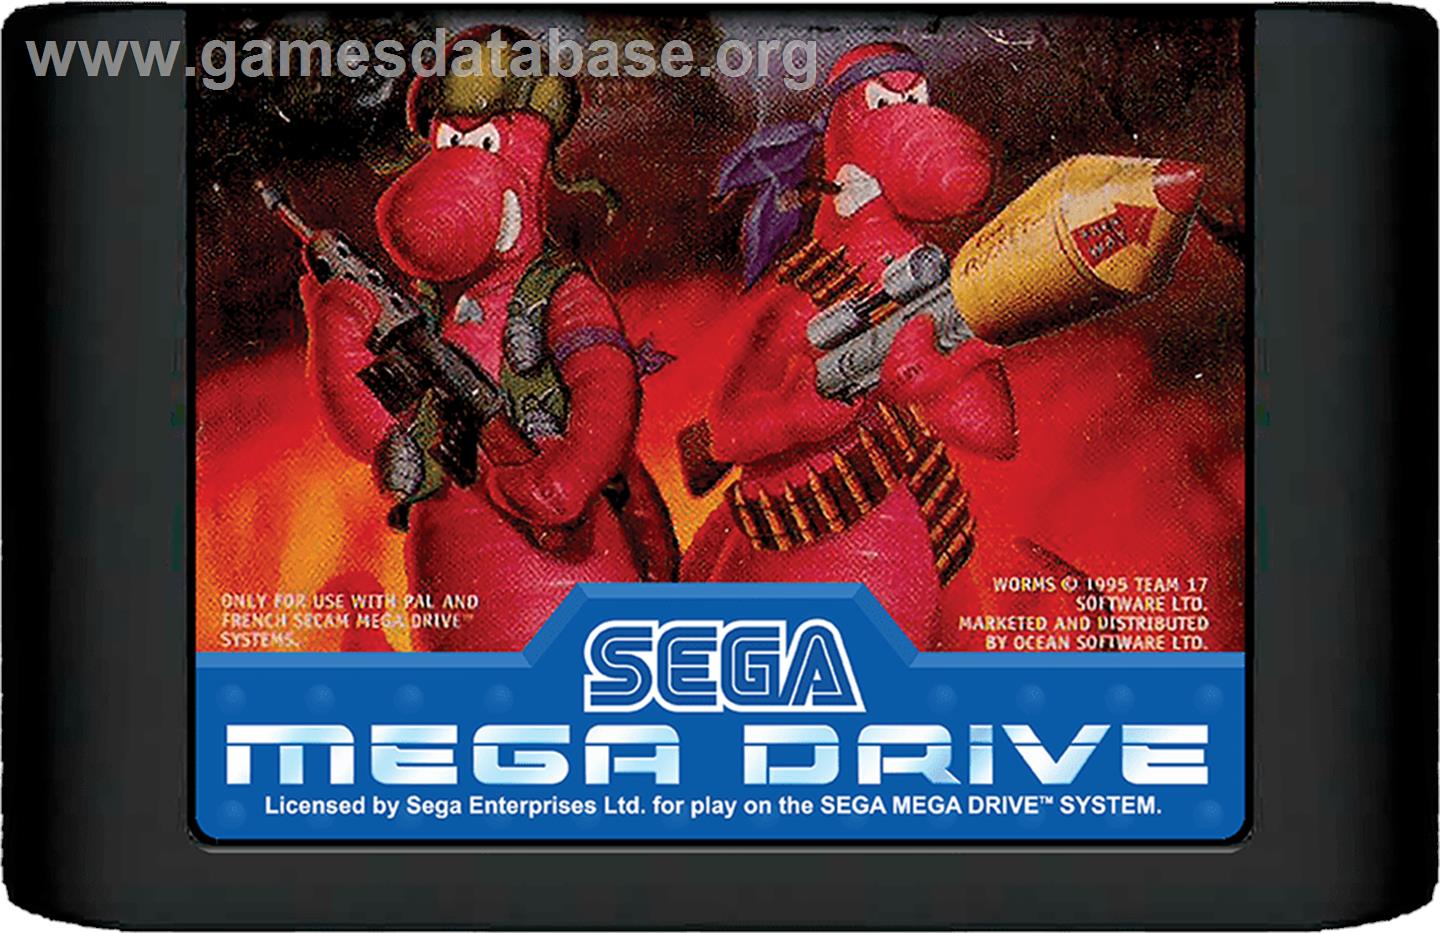 Worms - Sega Genesis - Artwork - Cartridge